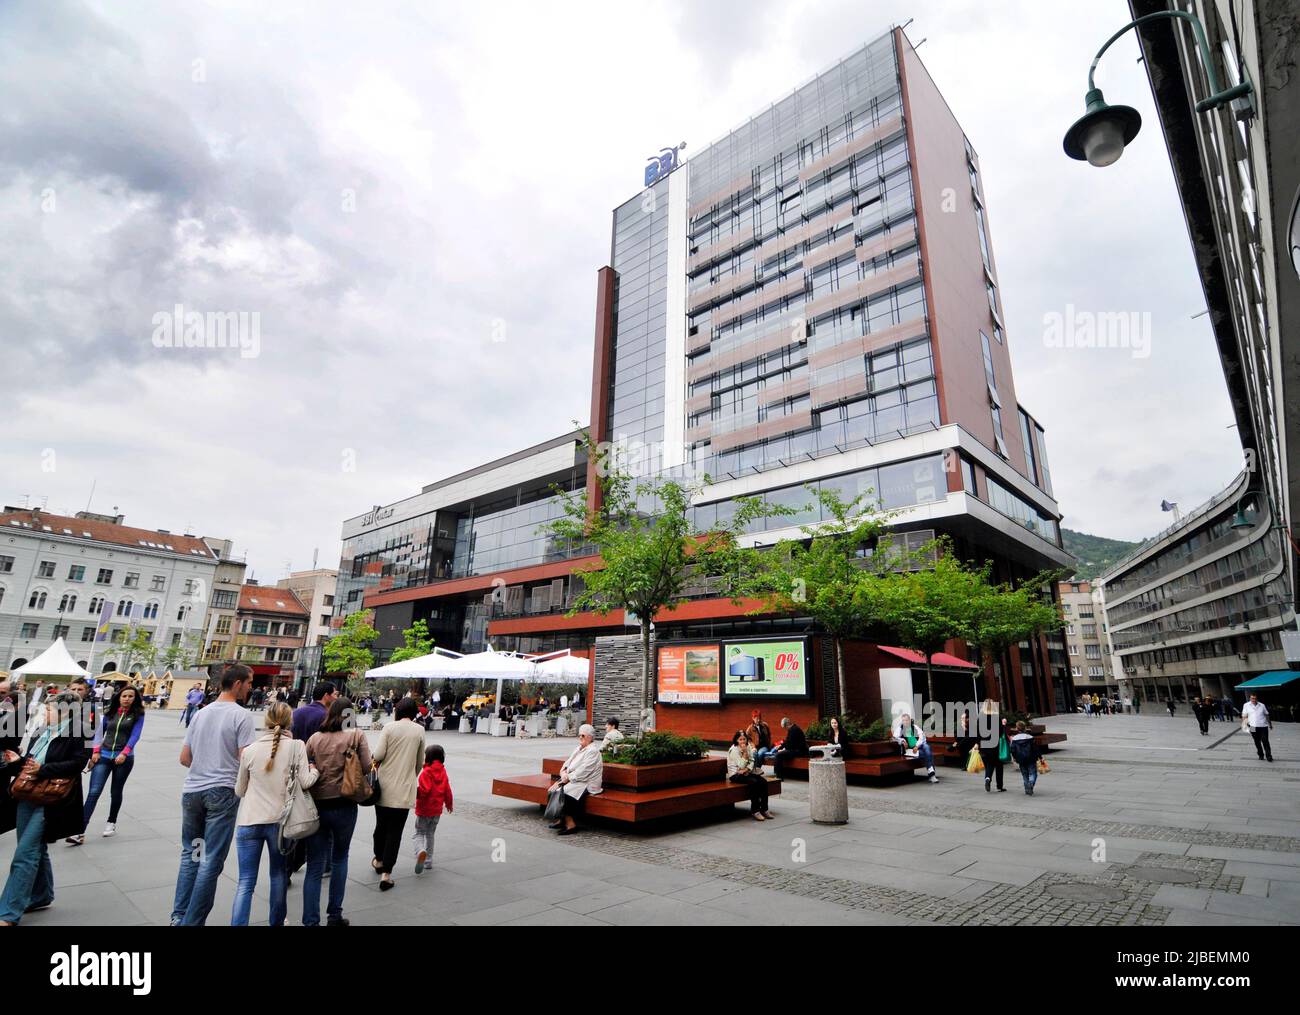 BBI center in Sarajevo, Bosnia & Herzegovina. Stock Photo